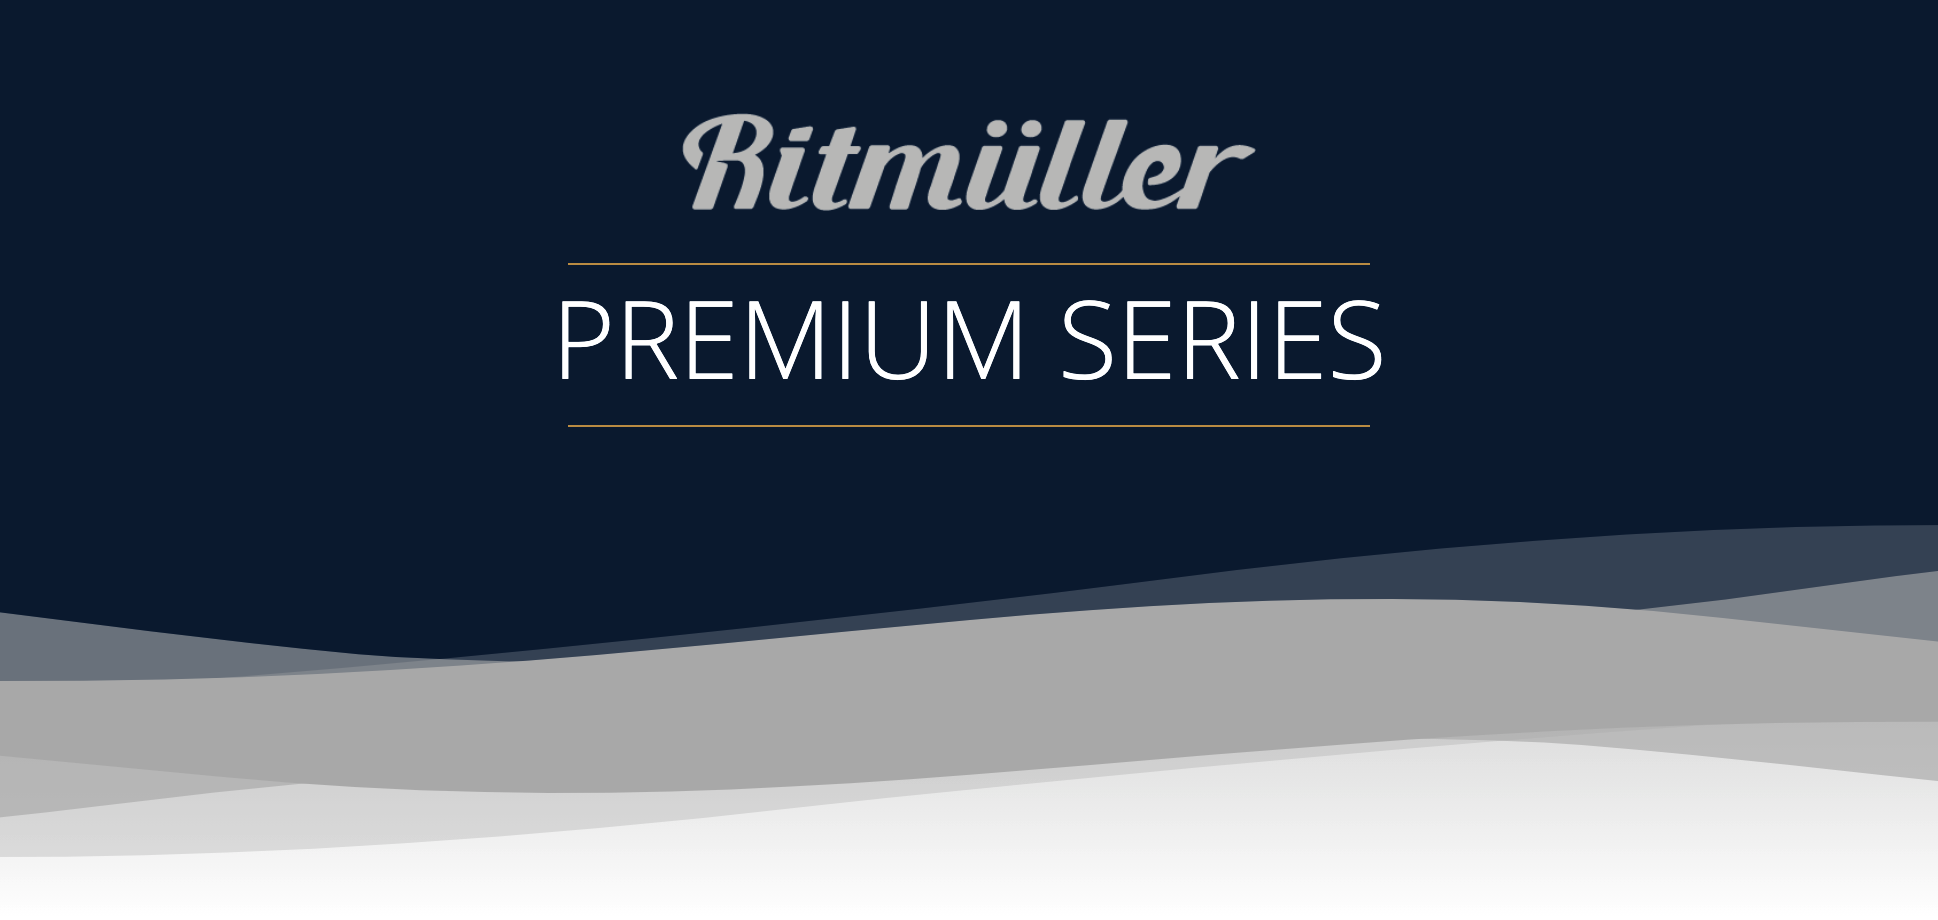 Ritmuller Premium Series